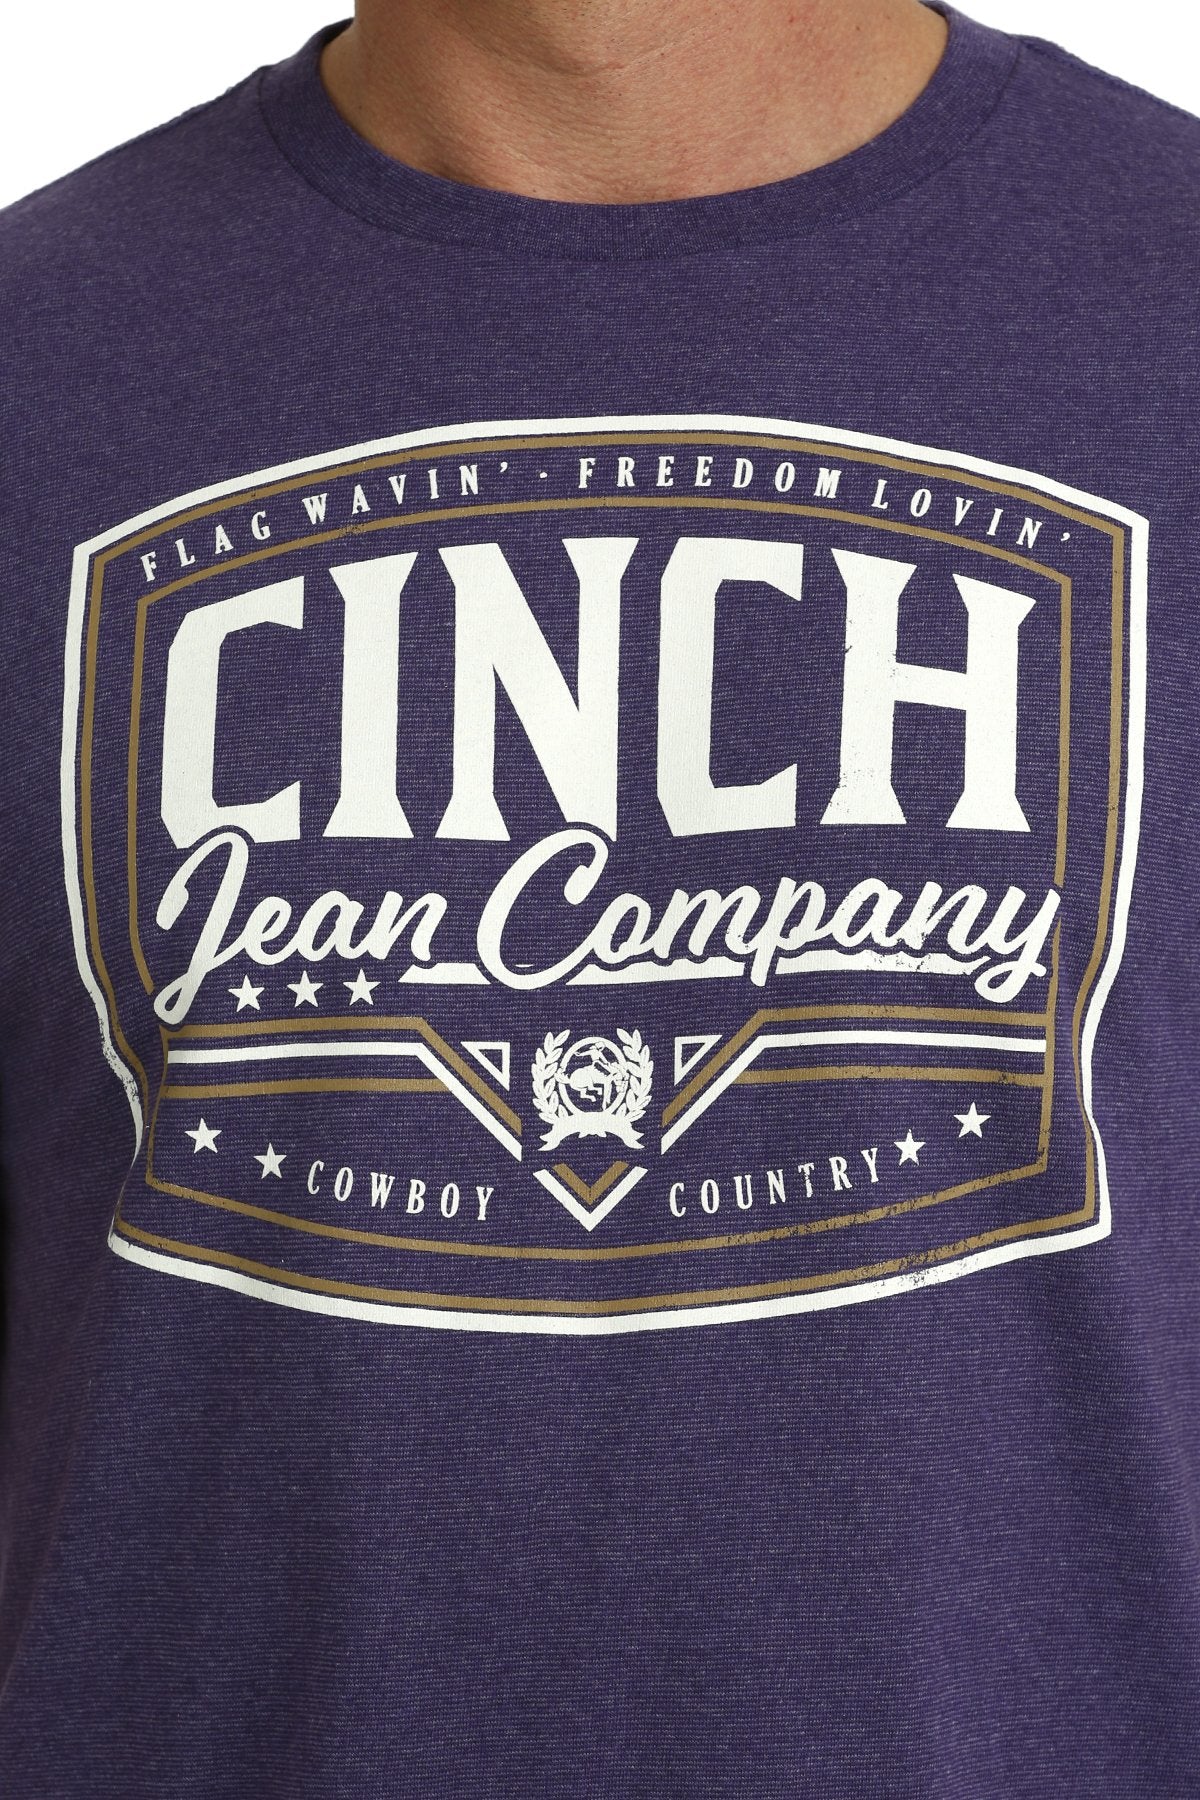 Cinch Jean Company Purple Tee MTT1690614